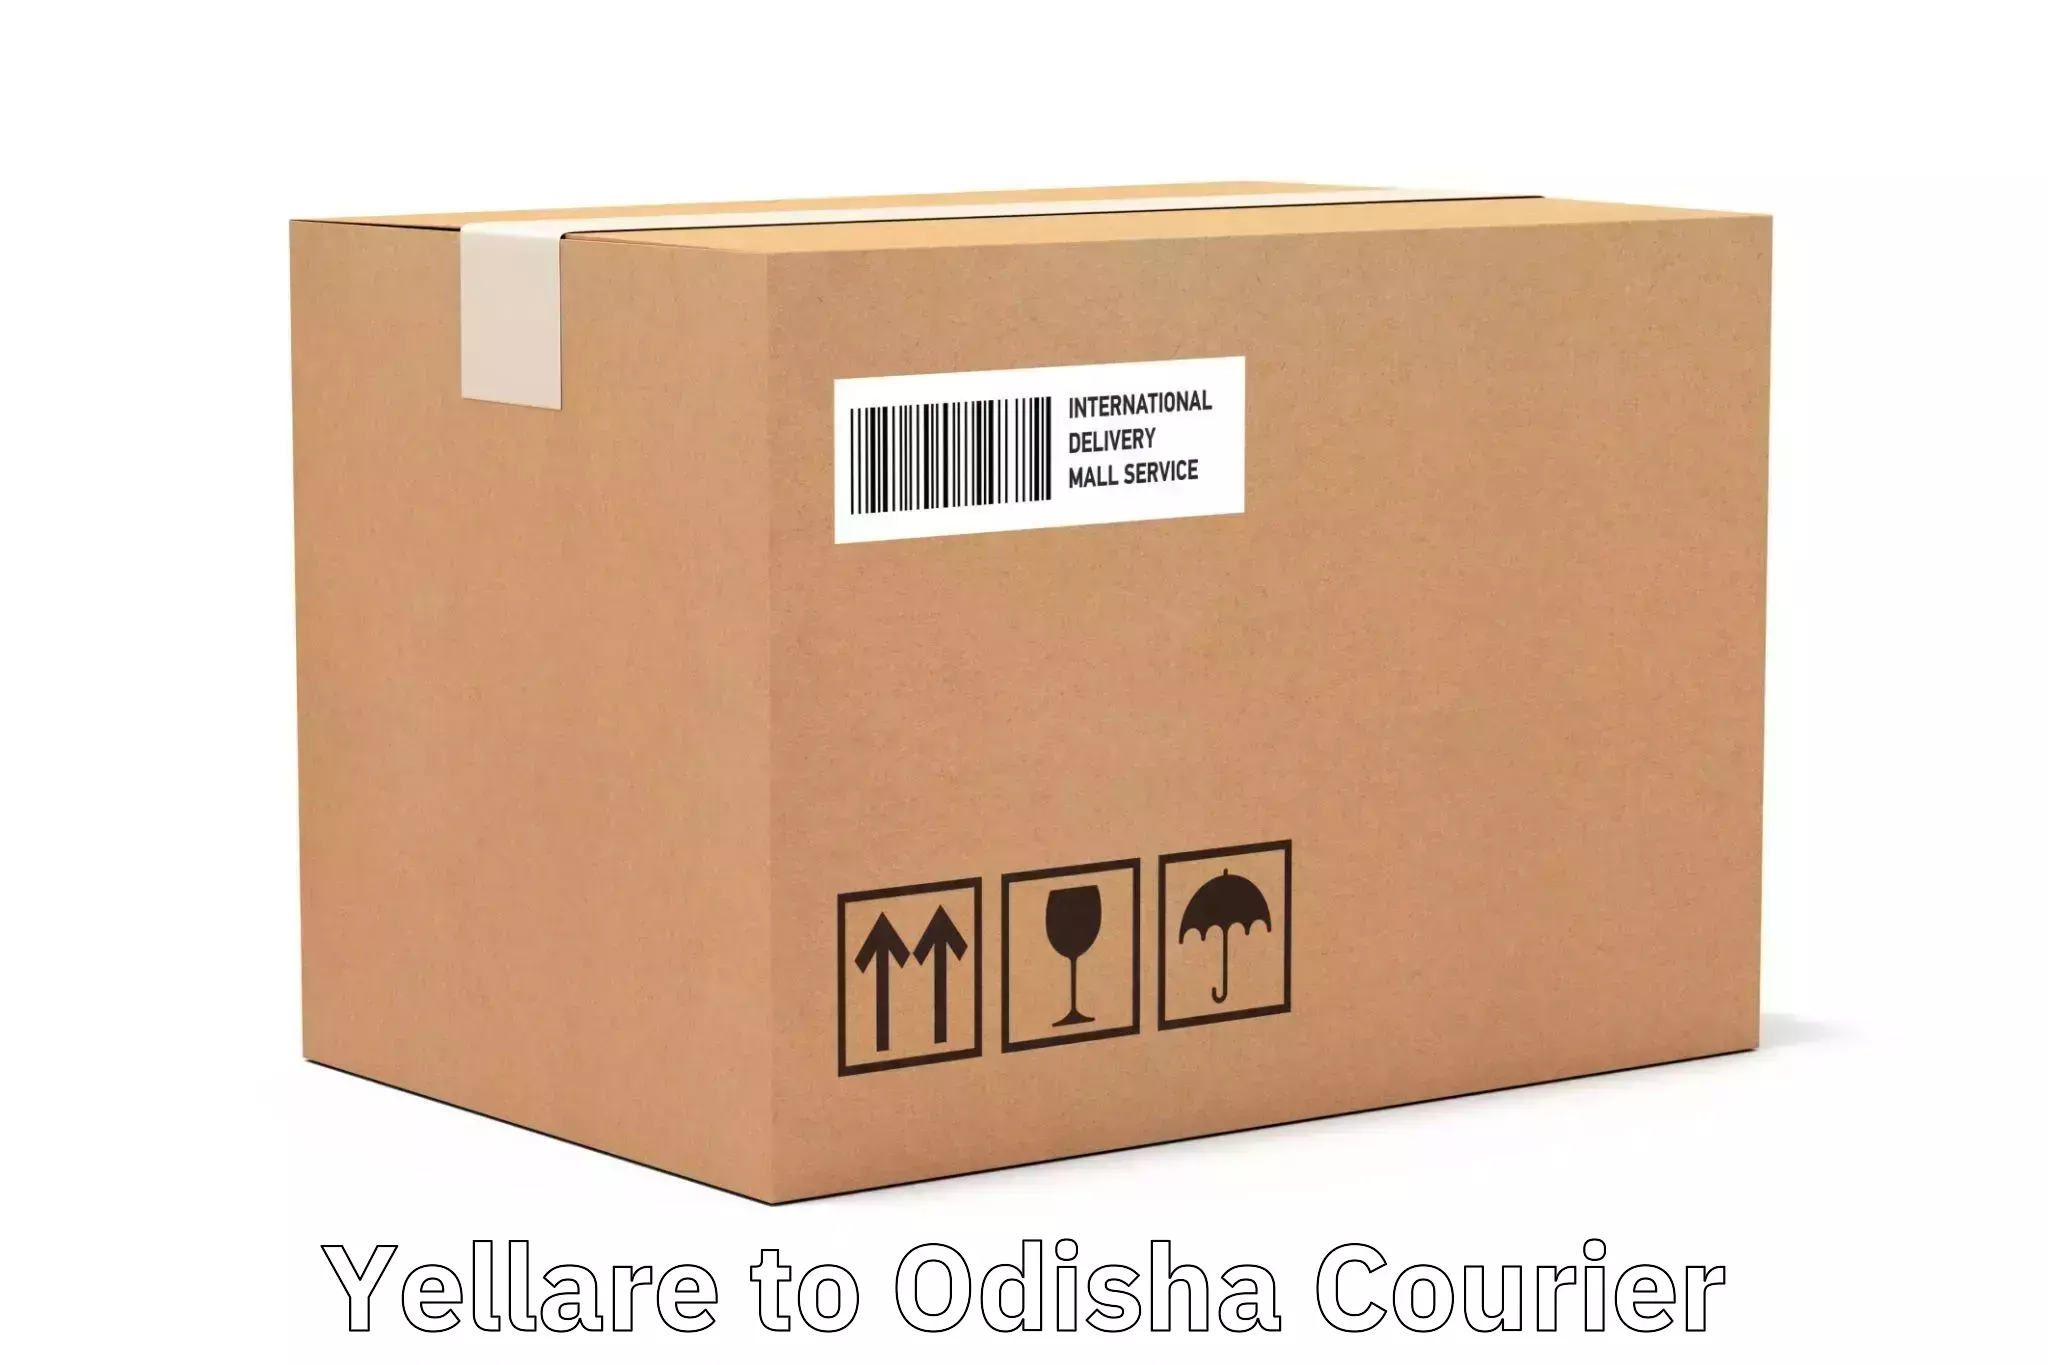 Custom courier packaging Yellare to Muniguda